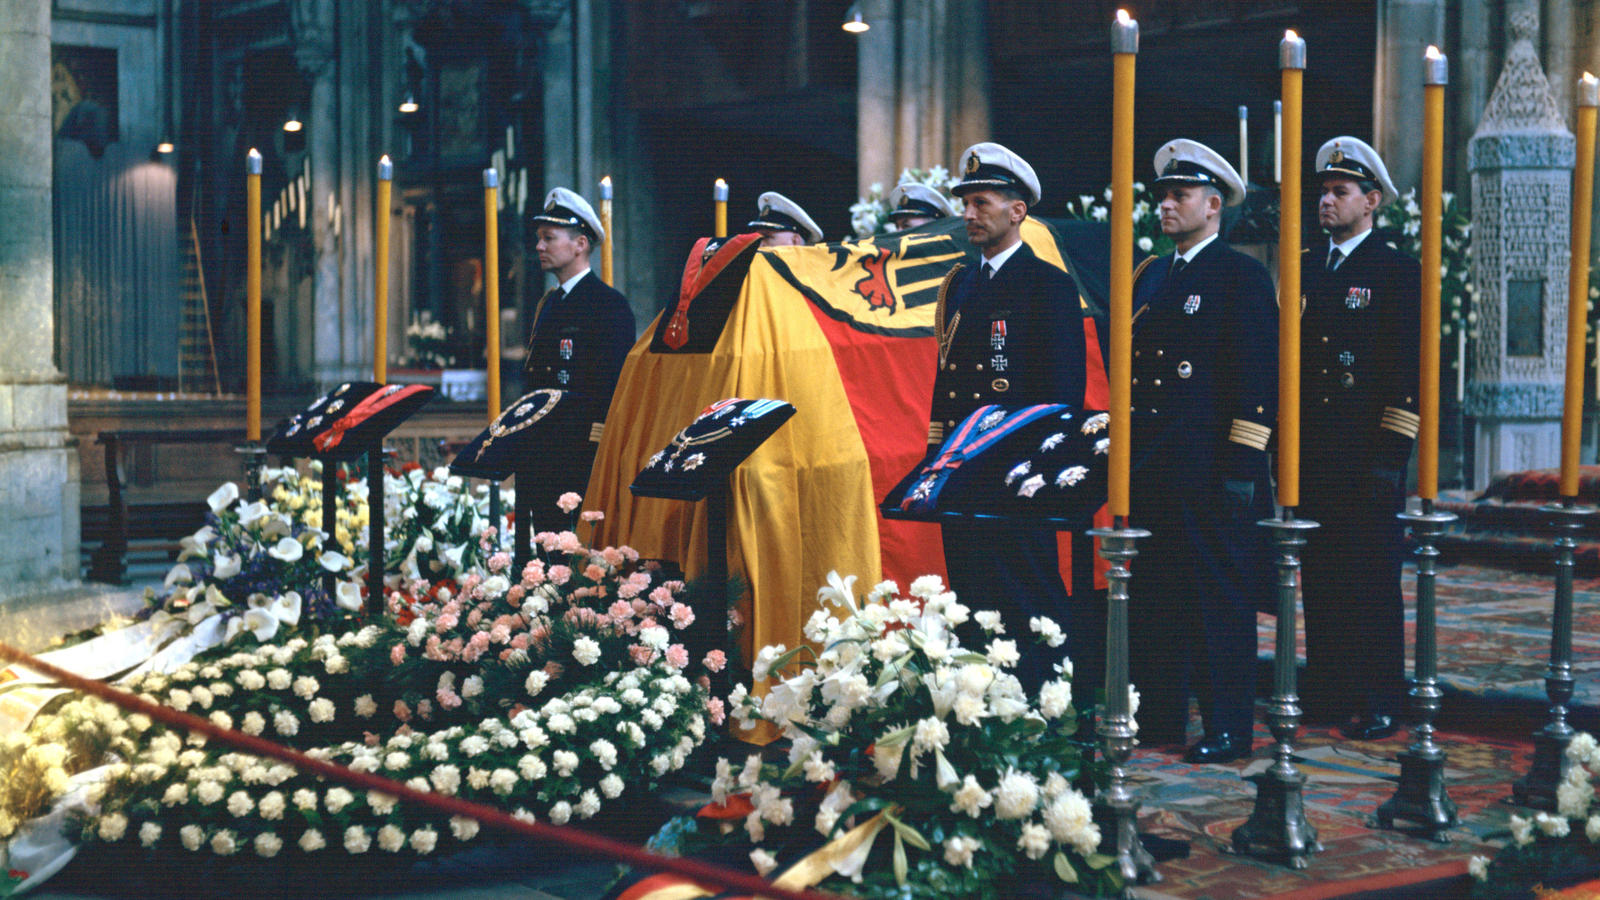 ARCHIV - Vom 24.04. bis 24.04.1967 wurde Altbundeskanzler Konrad Adenauer, der am 19.04.1967 in seiner Heimat Rhöndorf verstorben war, im Kölner Dom aufbgebahrt. Hohe Offiziere der Bundeswehr hielten die Totenwache. Adenauer war von 1949 bis 1963 der